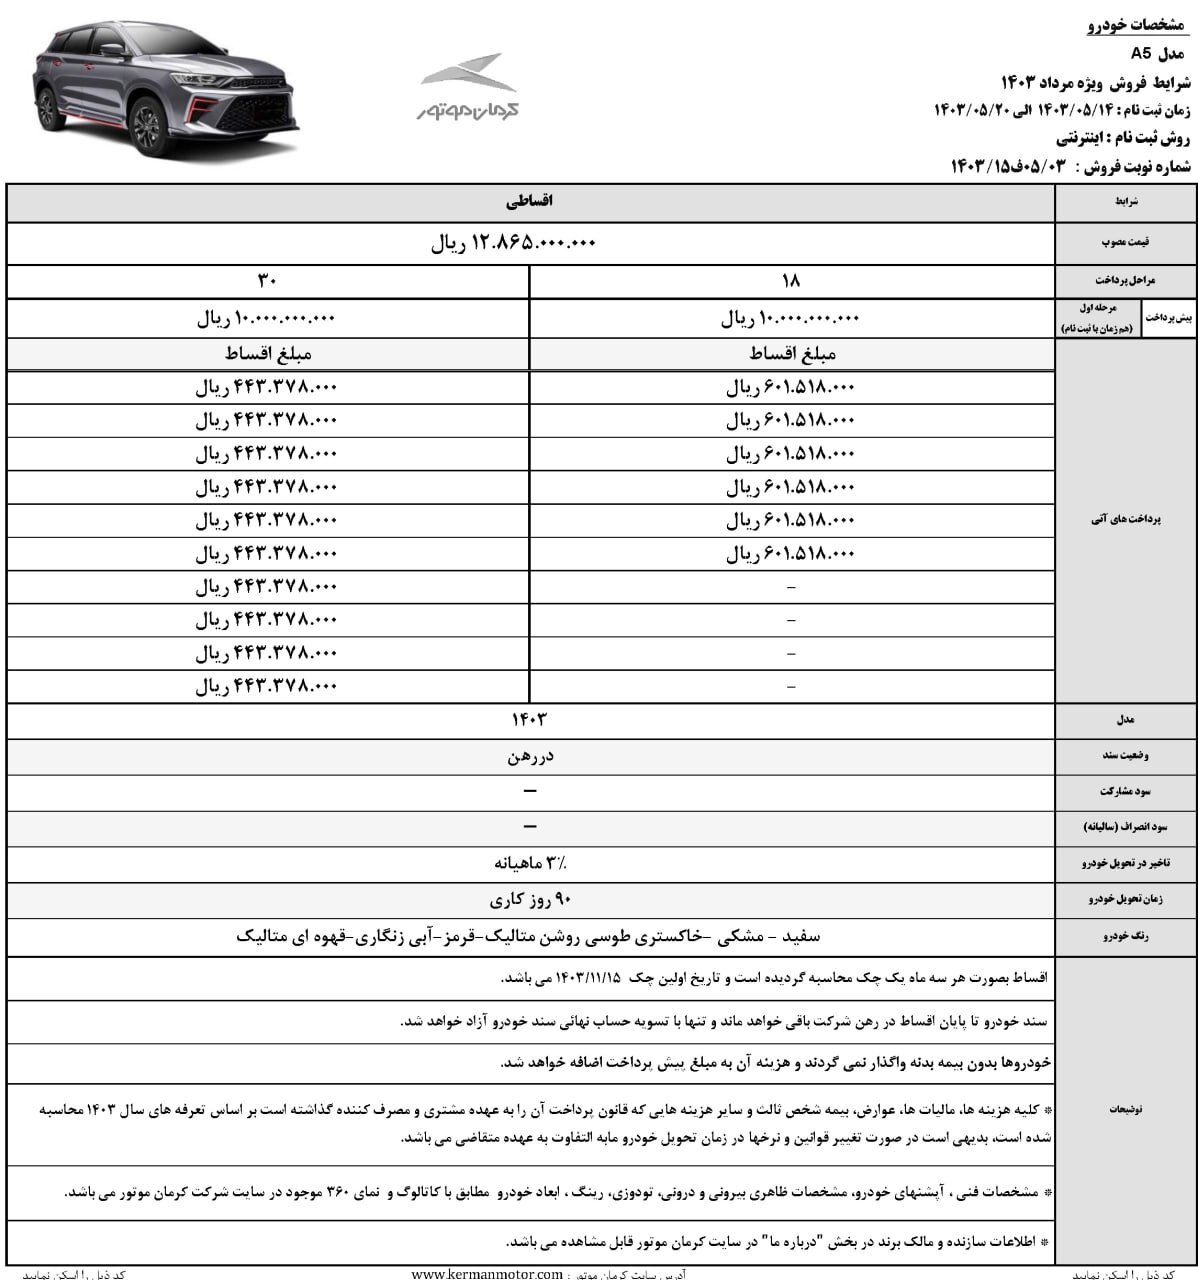 شرایط فروش محصولات کرمان موتور اعلام شد (۱۳ مرداد ۱۴۰۳) + جزئیات